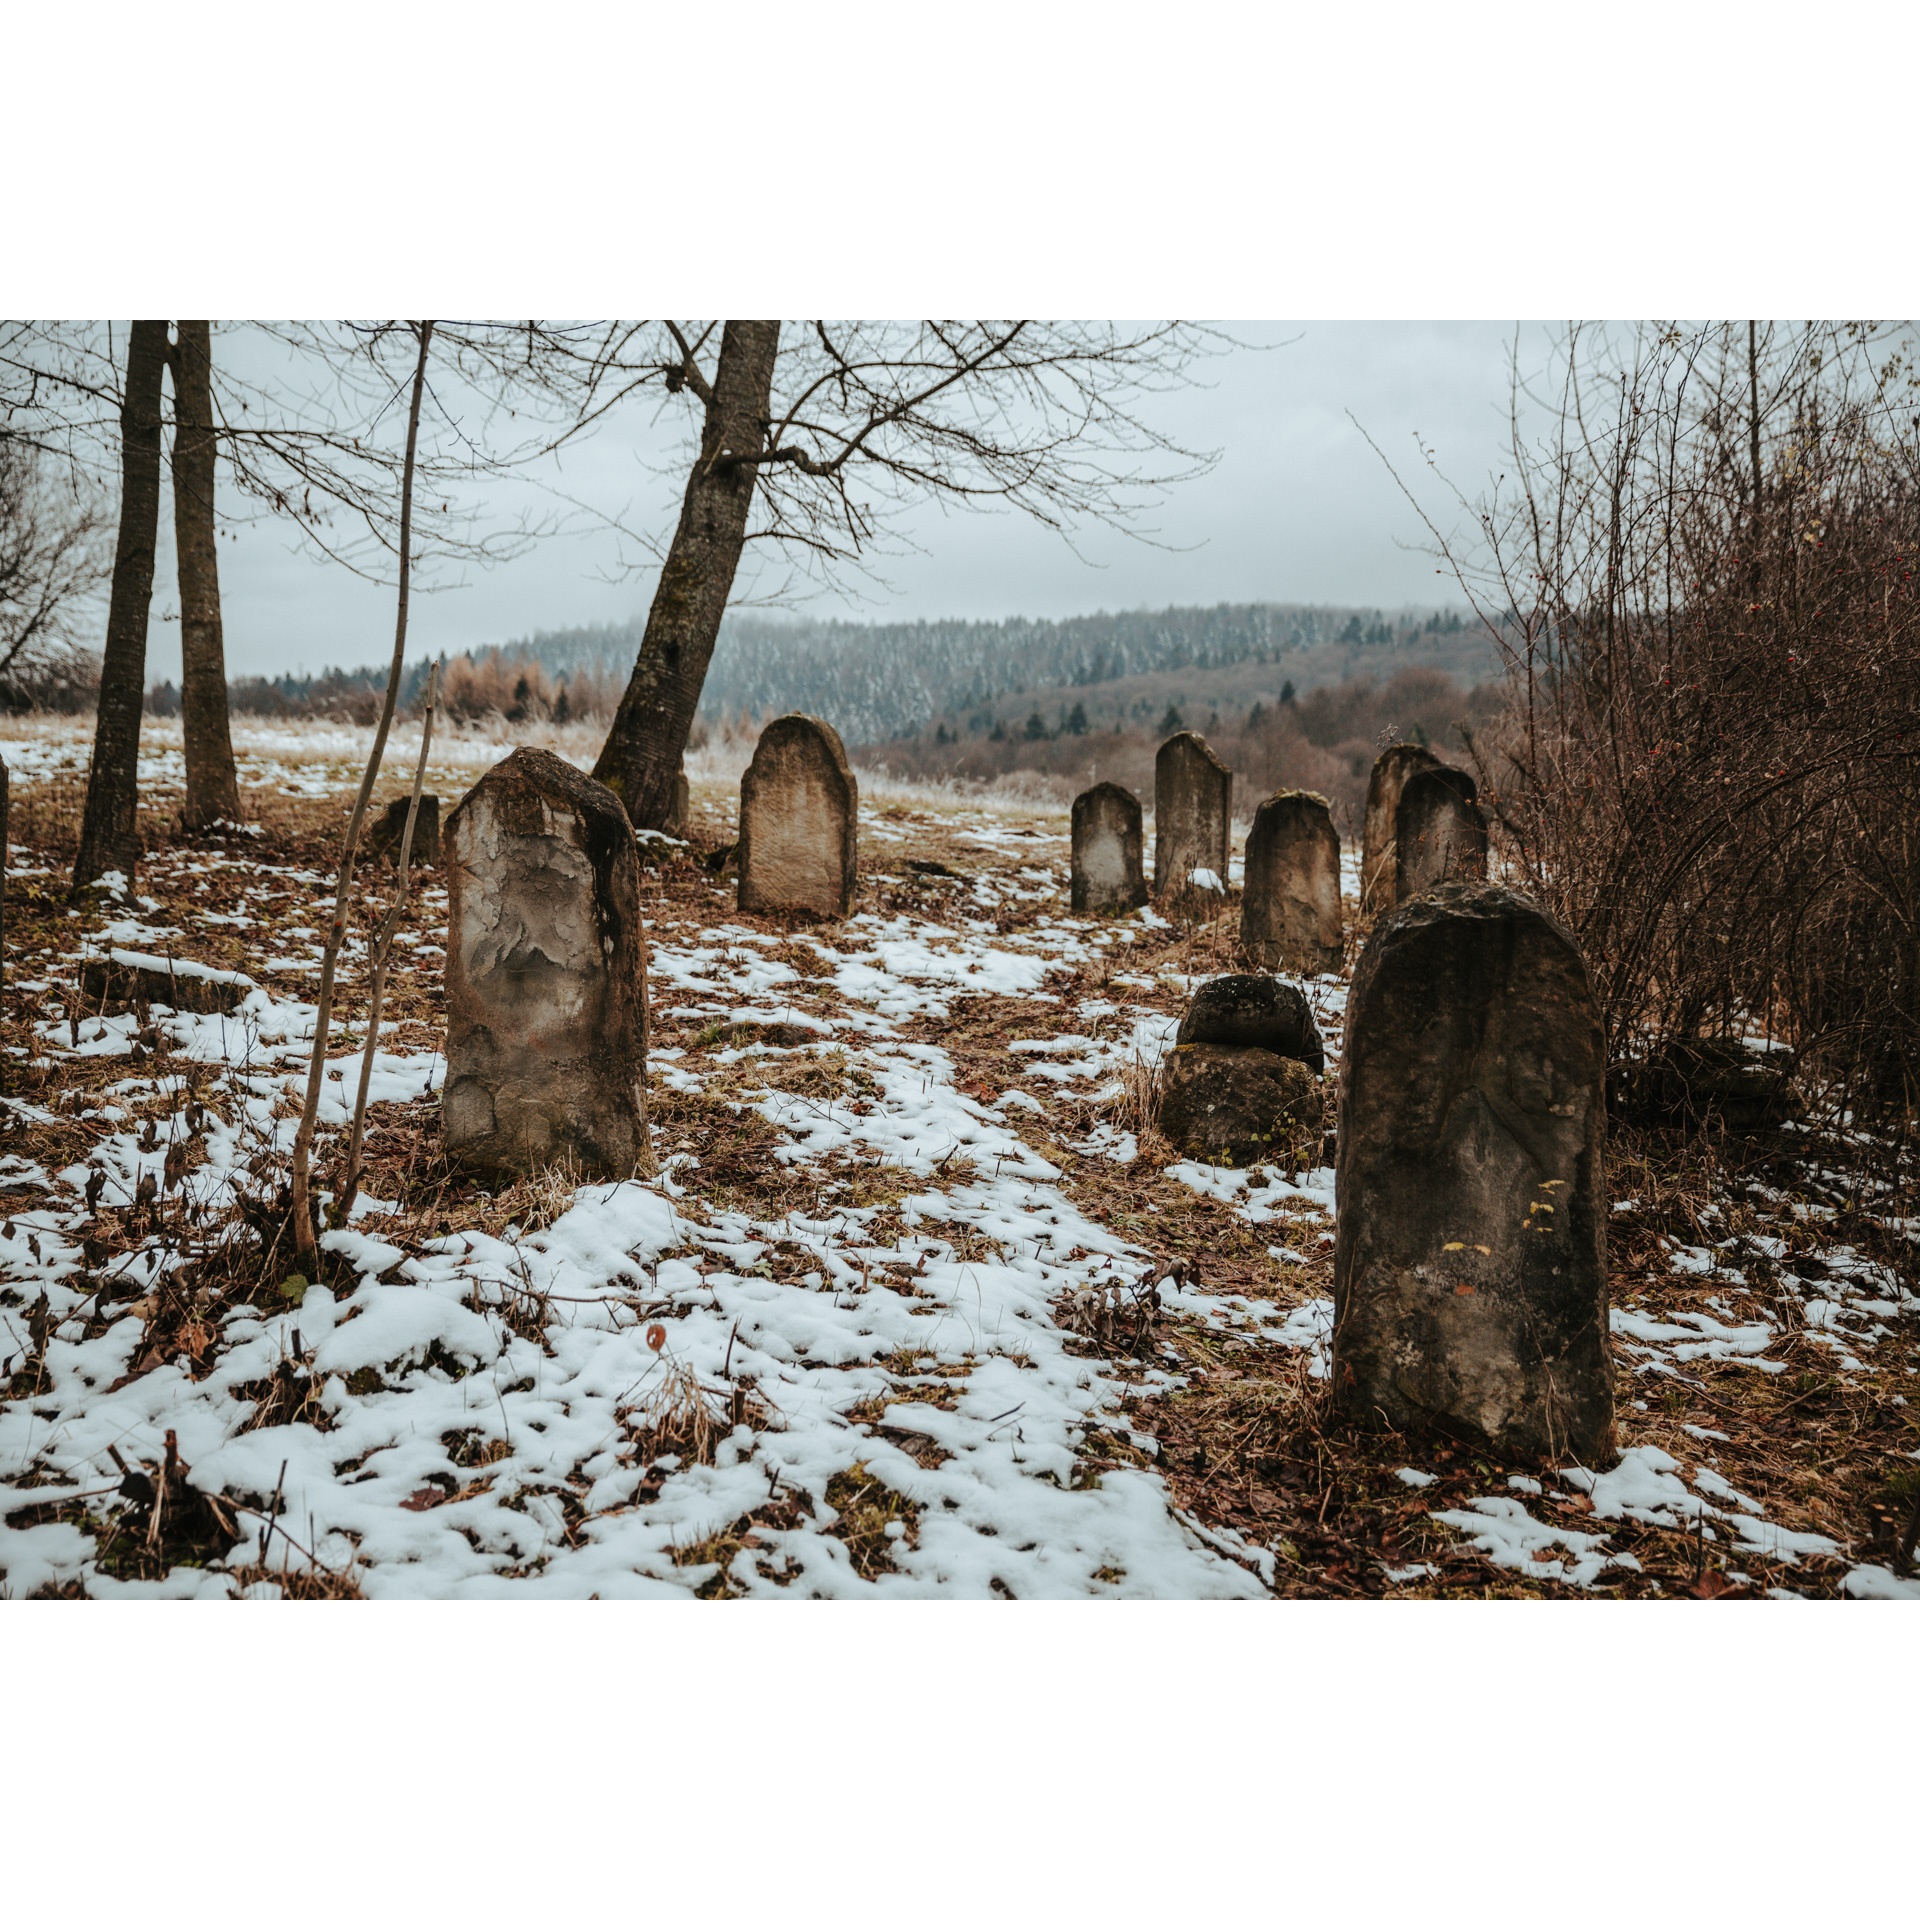 Stare, kamienne płyty nagrobne wśród liści, drzew i śniegu